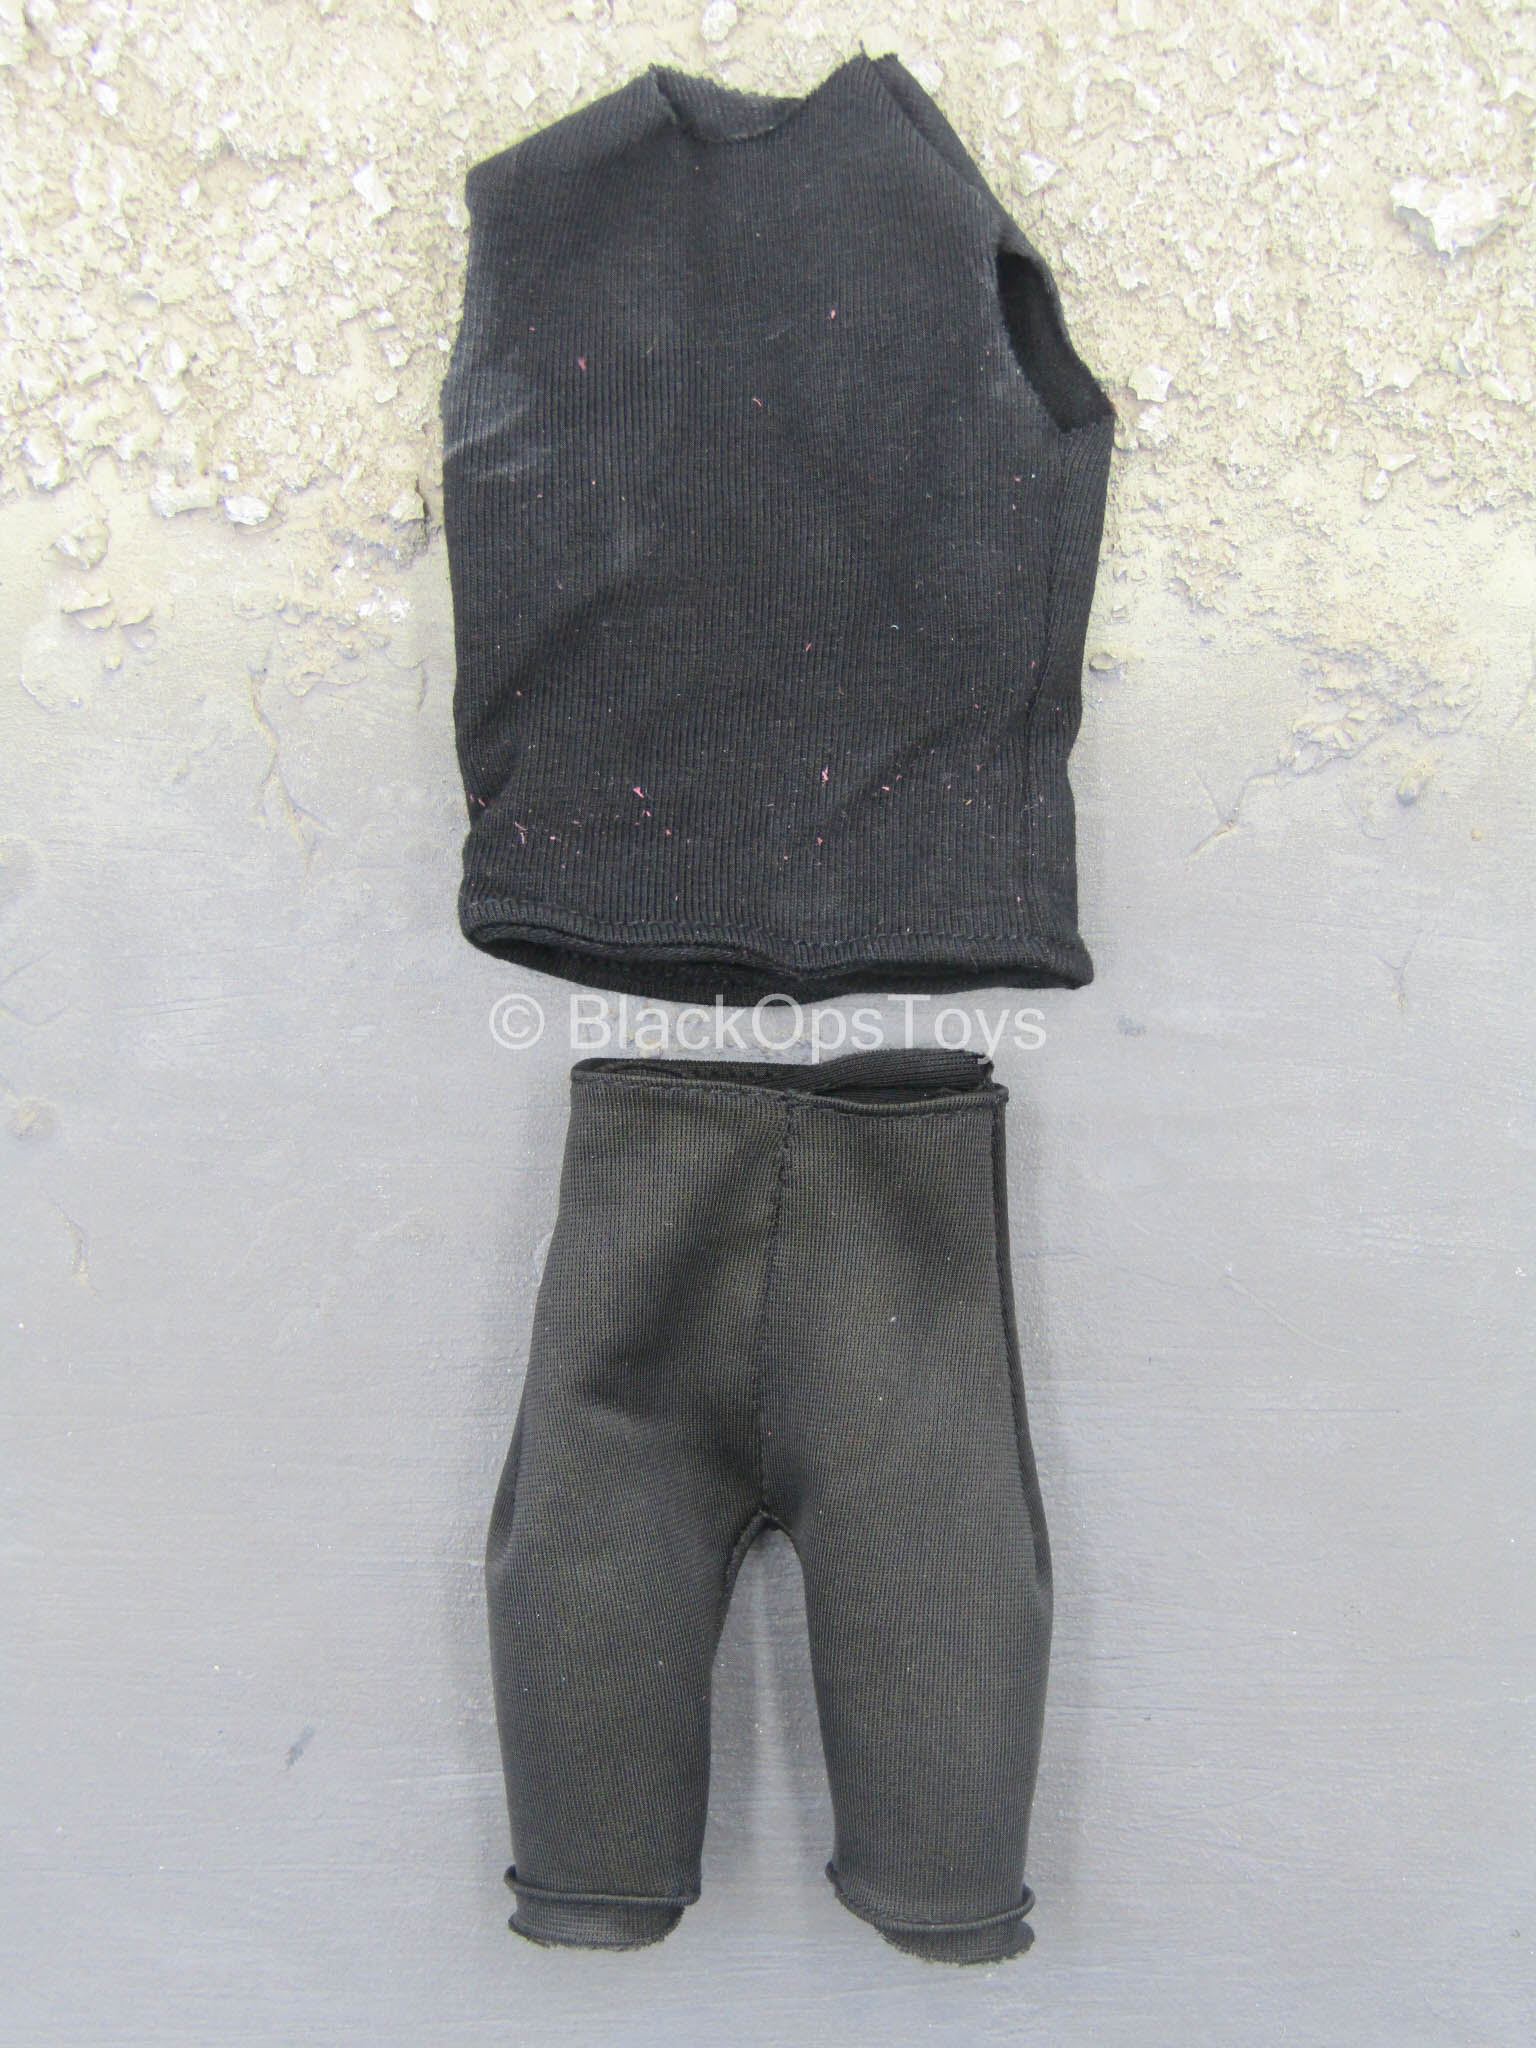 1/6 Scale Padded Underwear Model For 12 Figure Body